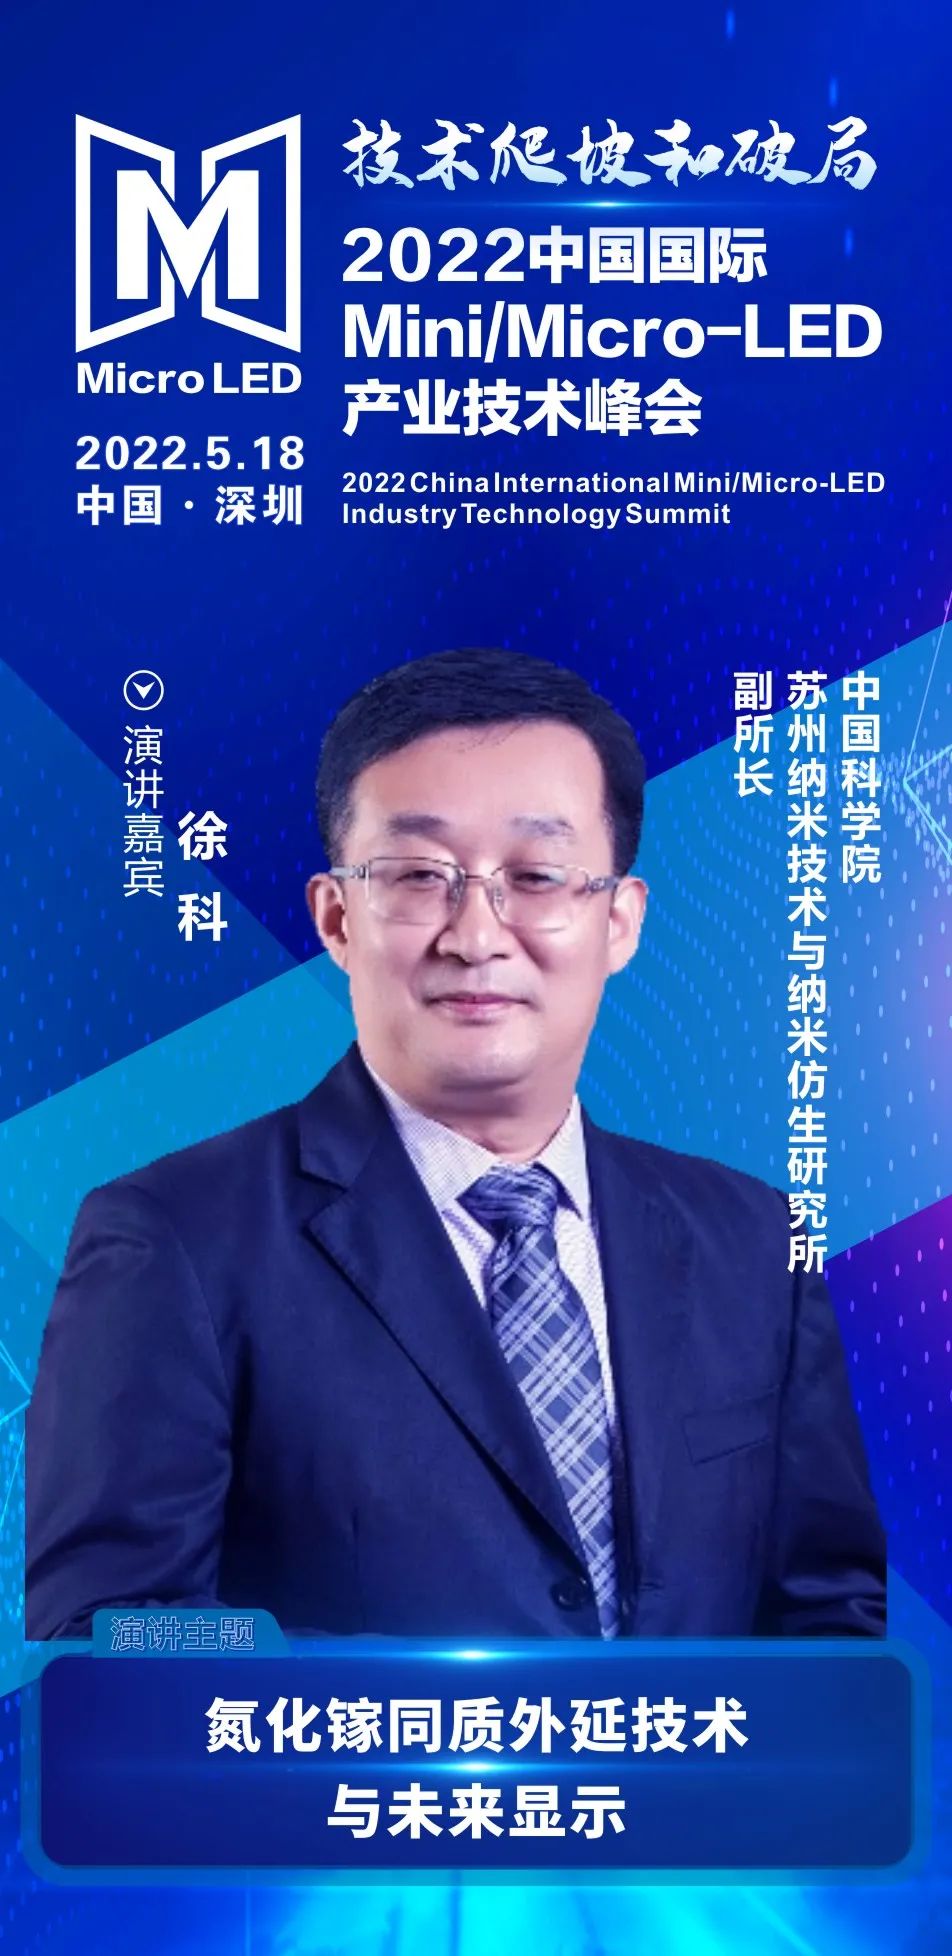 倒计时20天！2022中国国际Mini/Micro-LED产业技术峰会大咖嘉宾、参会企业火热更新中